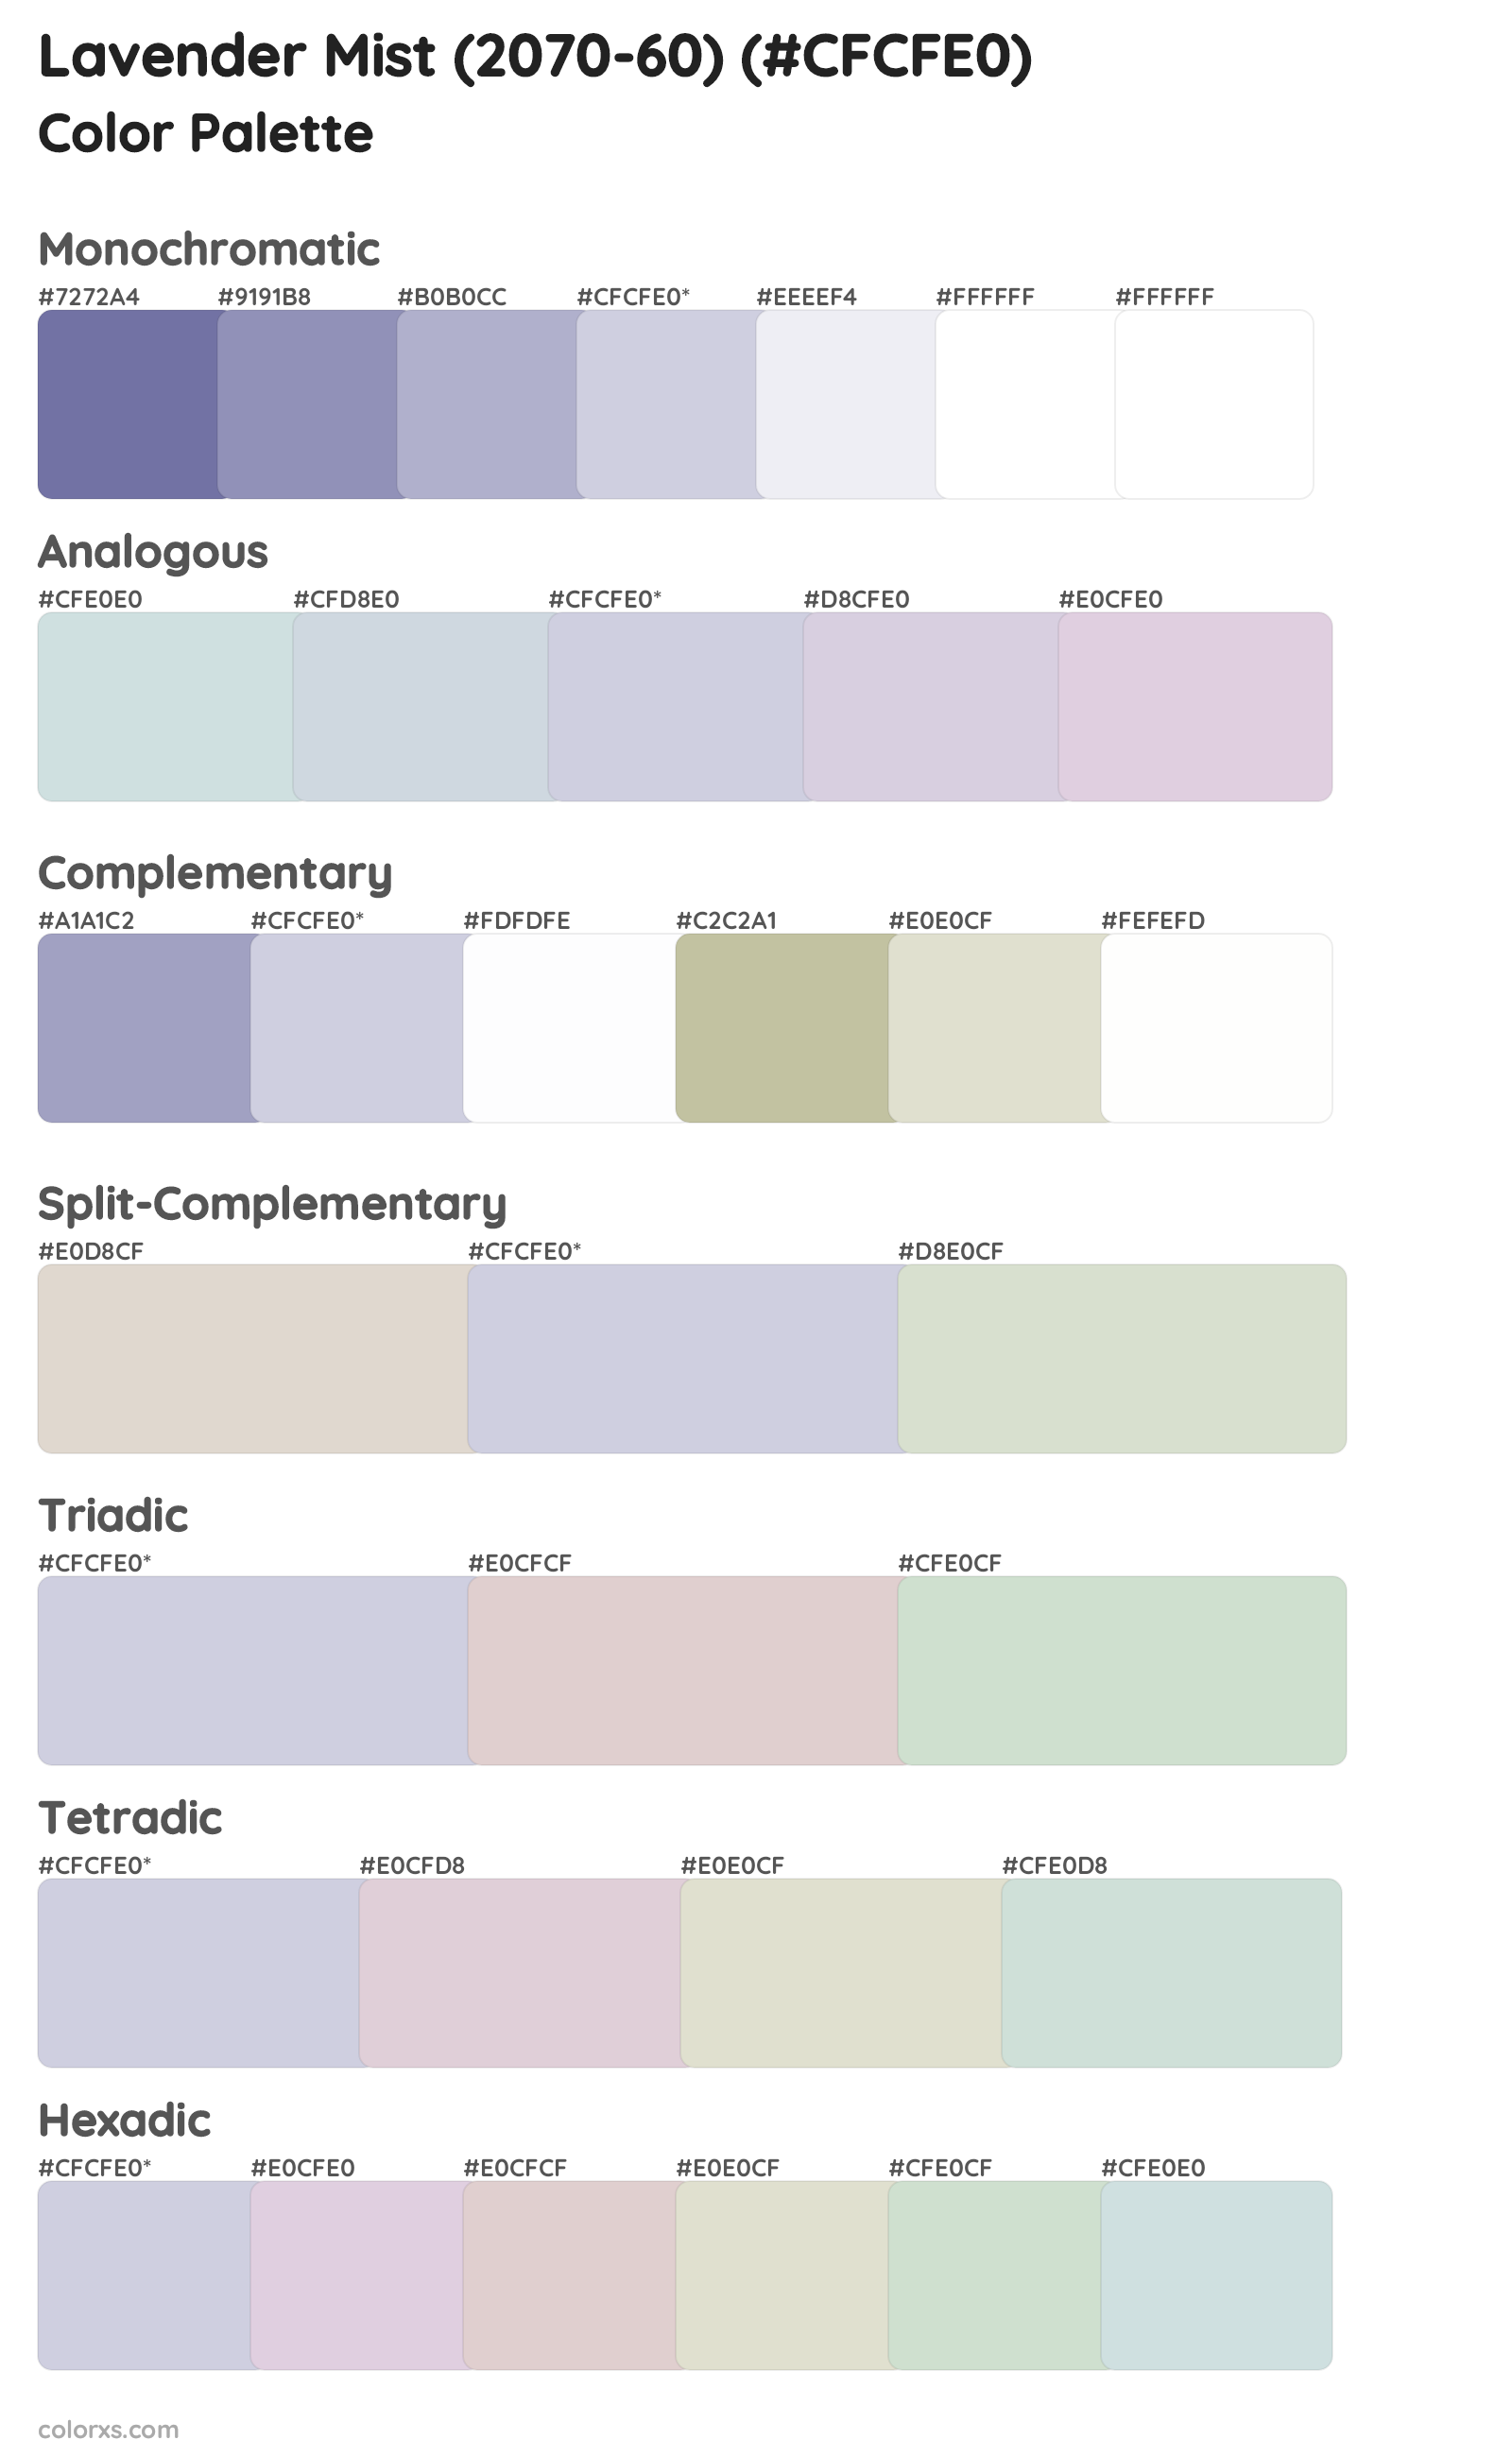 Lavender Mist (2070-60) Color Scheme Palettes